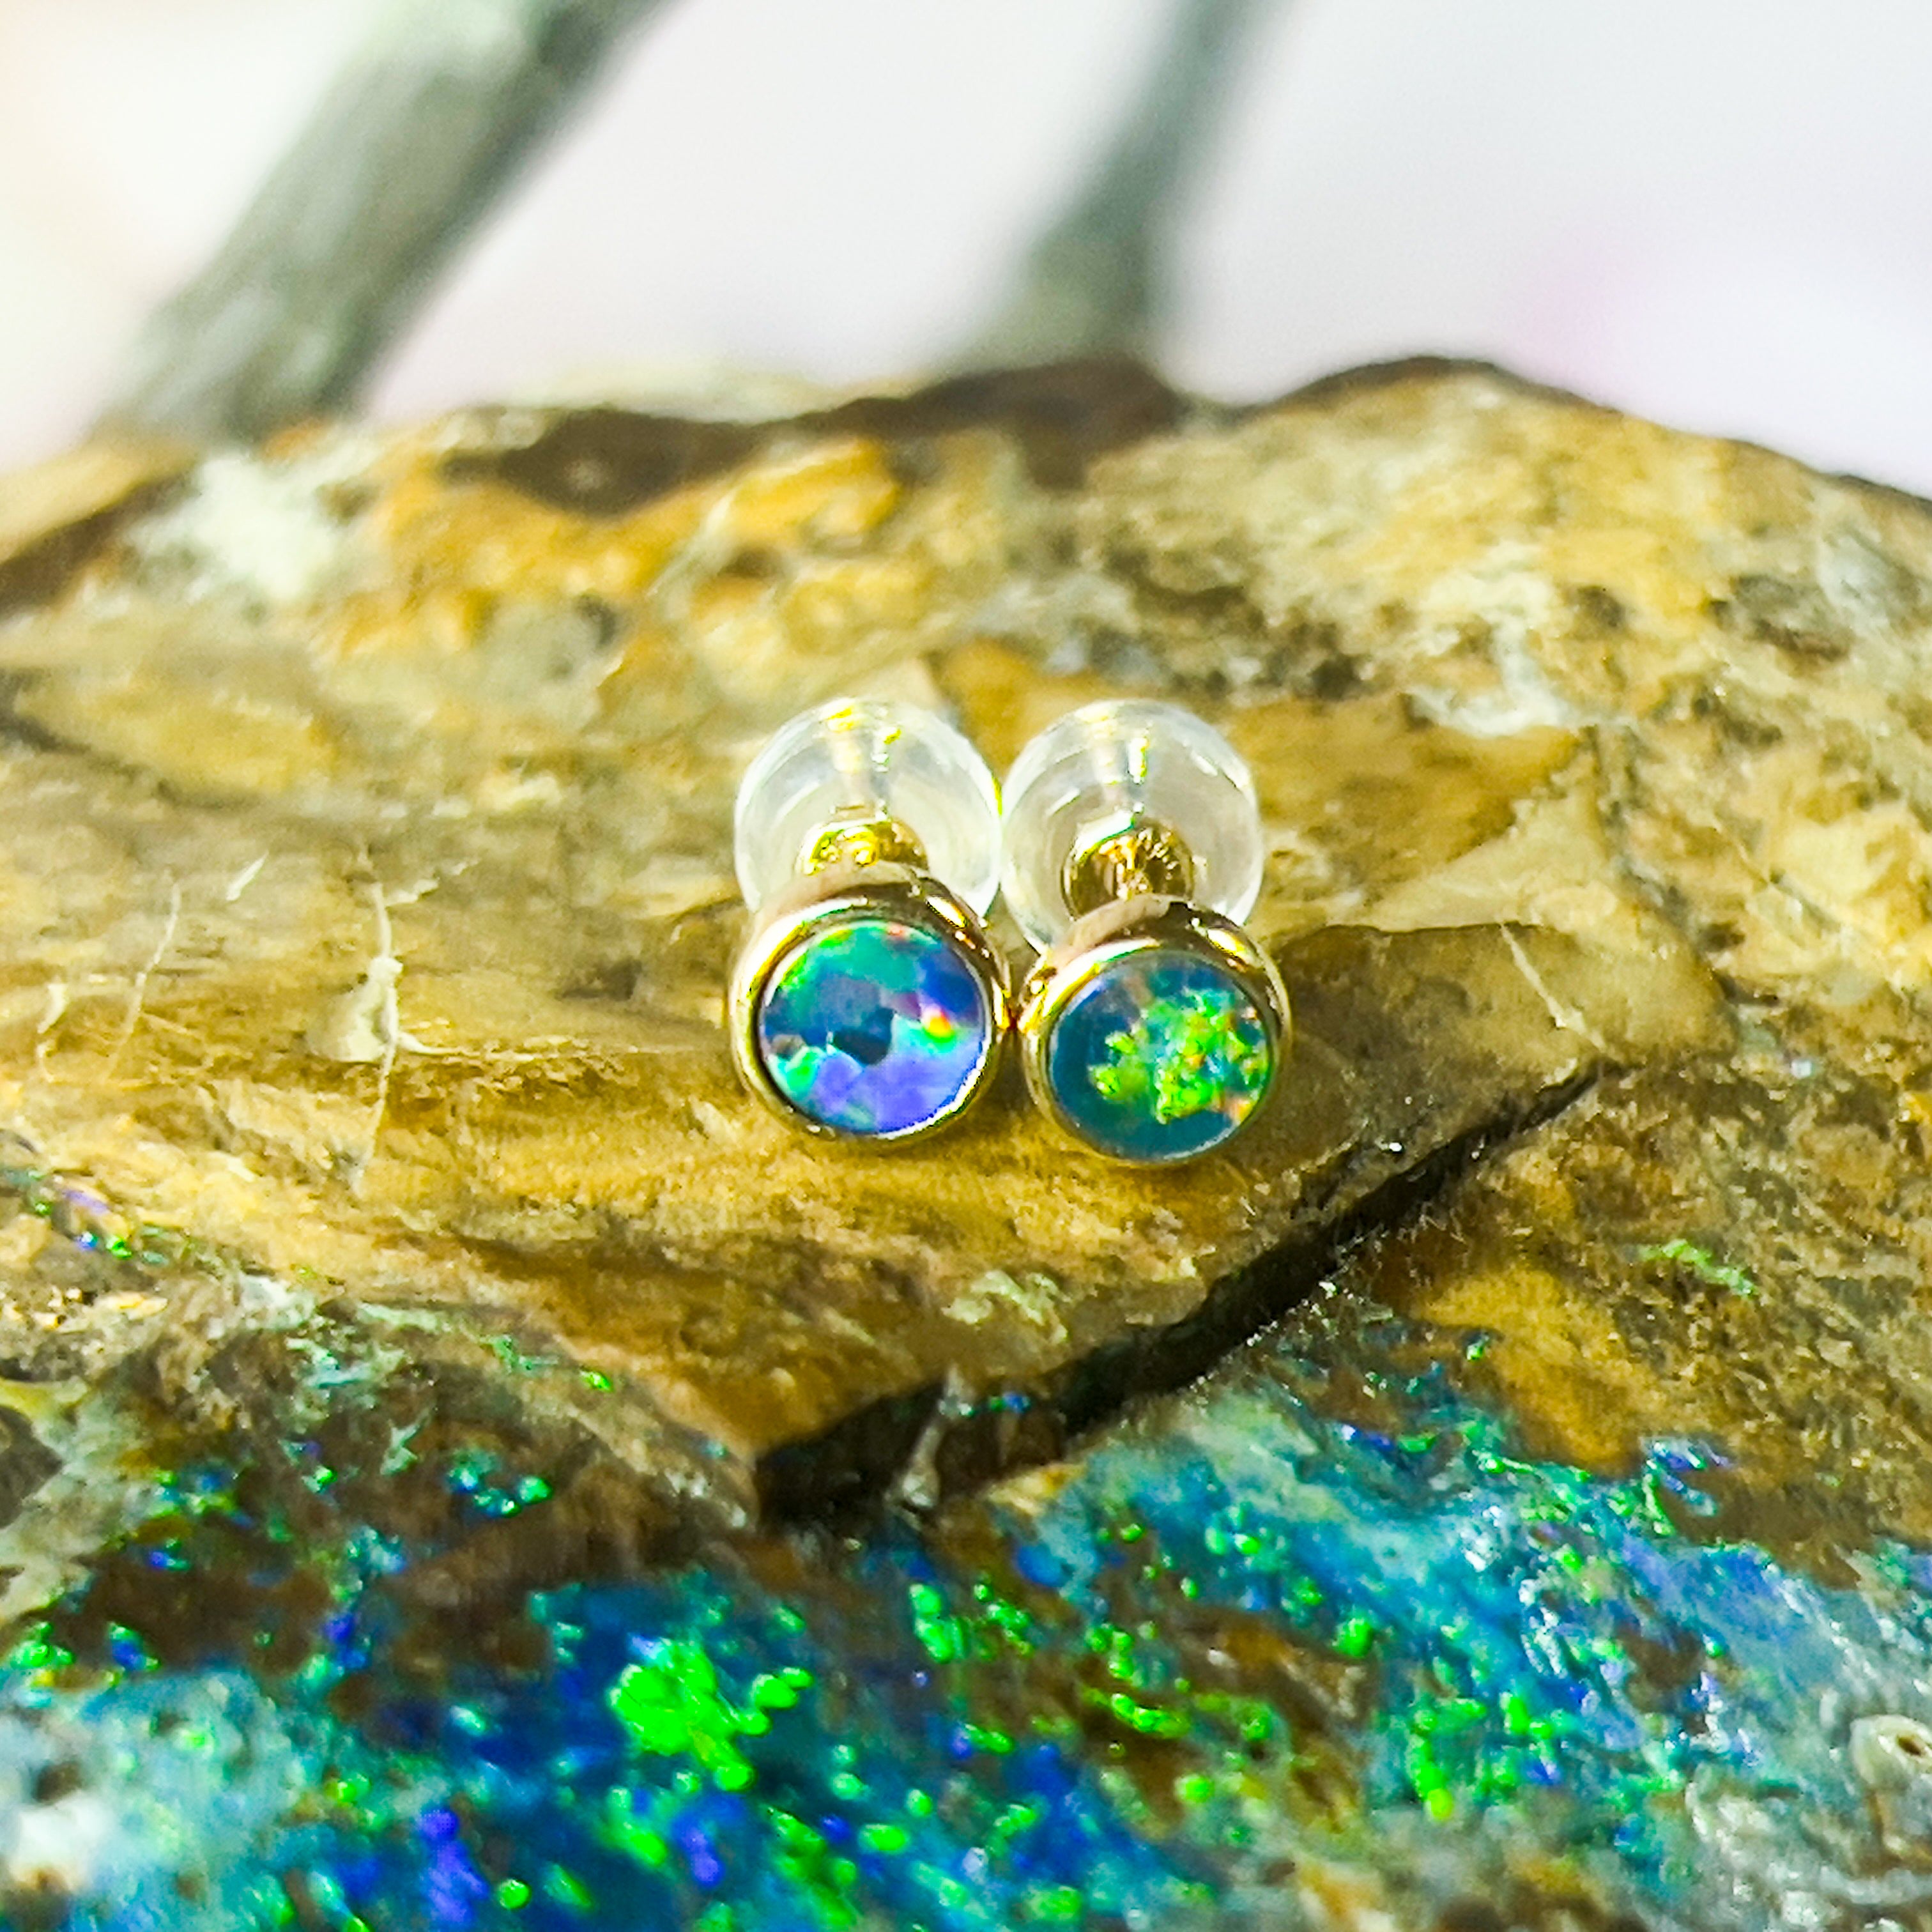 Handmade Opal Stud Earrings - Gold/Silver | Dainty & Cute | Crystal Fire Opal Jewelry | Gift for Her 3mm - Masterpiece Jewellery Opal & Gems Sydney Australia | Online Shop